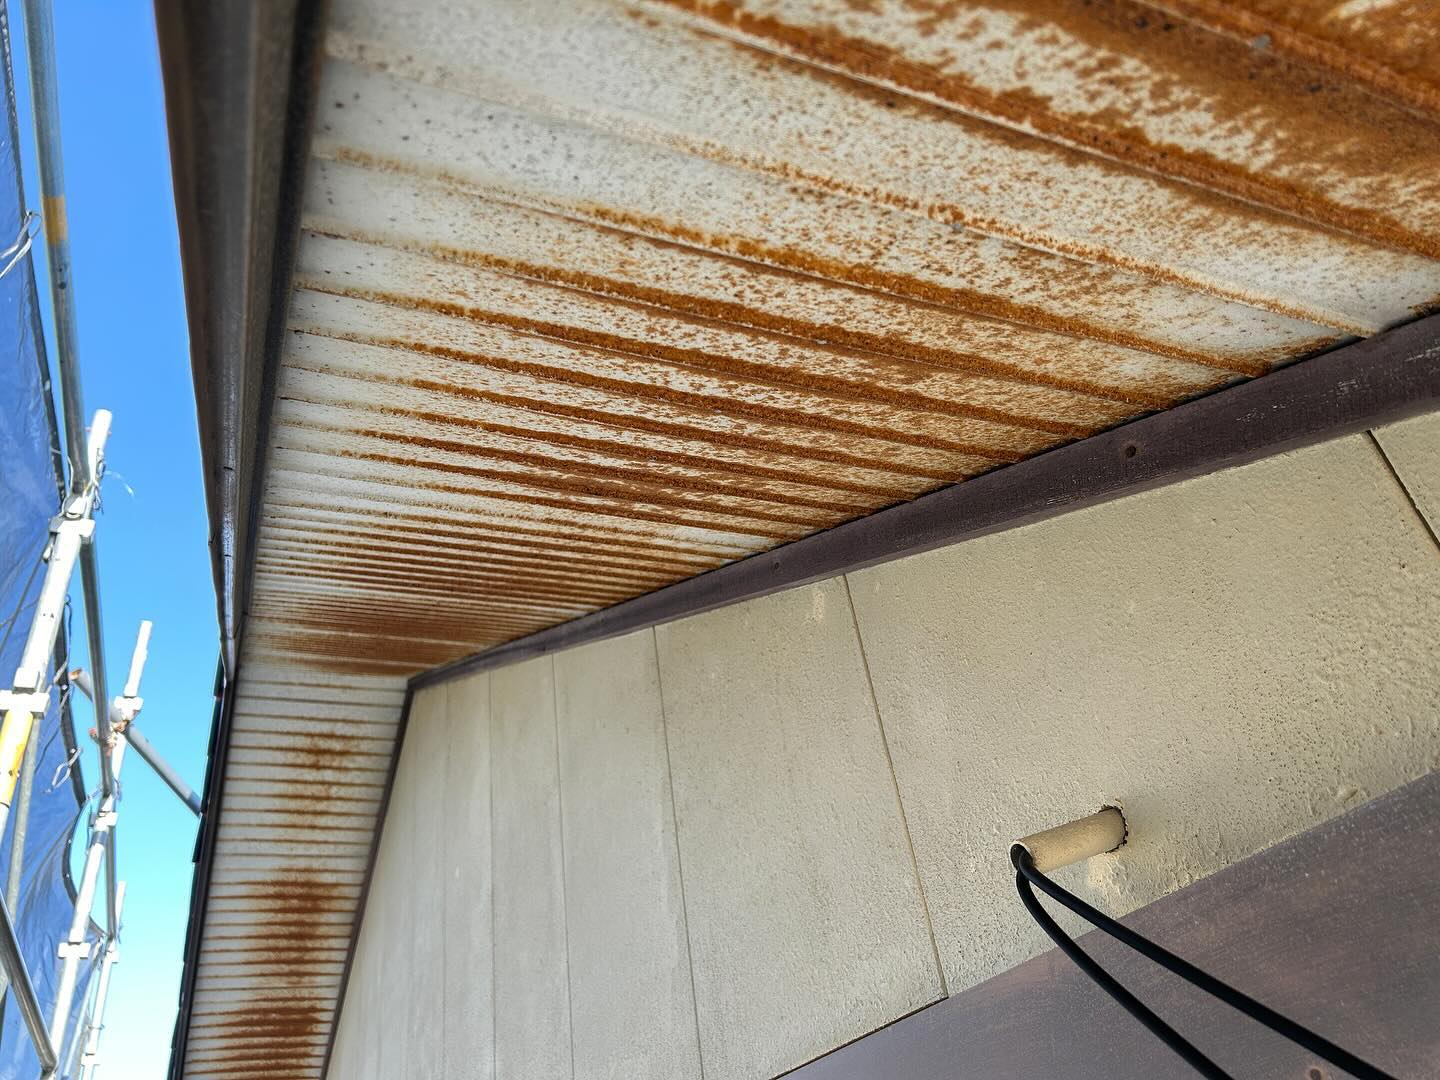 今日の塗装工事

浜松市中央区布橋のＯ様邸の
軒天塗装工事を行いました。

元々の天井は錆が進行しており
痛みの状態が悪い為、
下地処理をしっかりとした後に
錆止めを塗布し、上塗りしました。

白色の天井から茶色に変更し
落ち着いた雰囲気になりました。